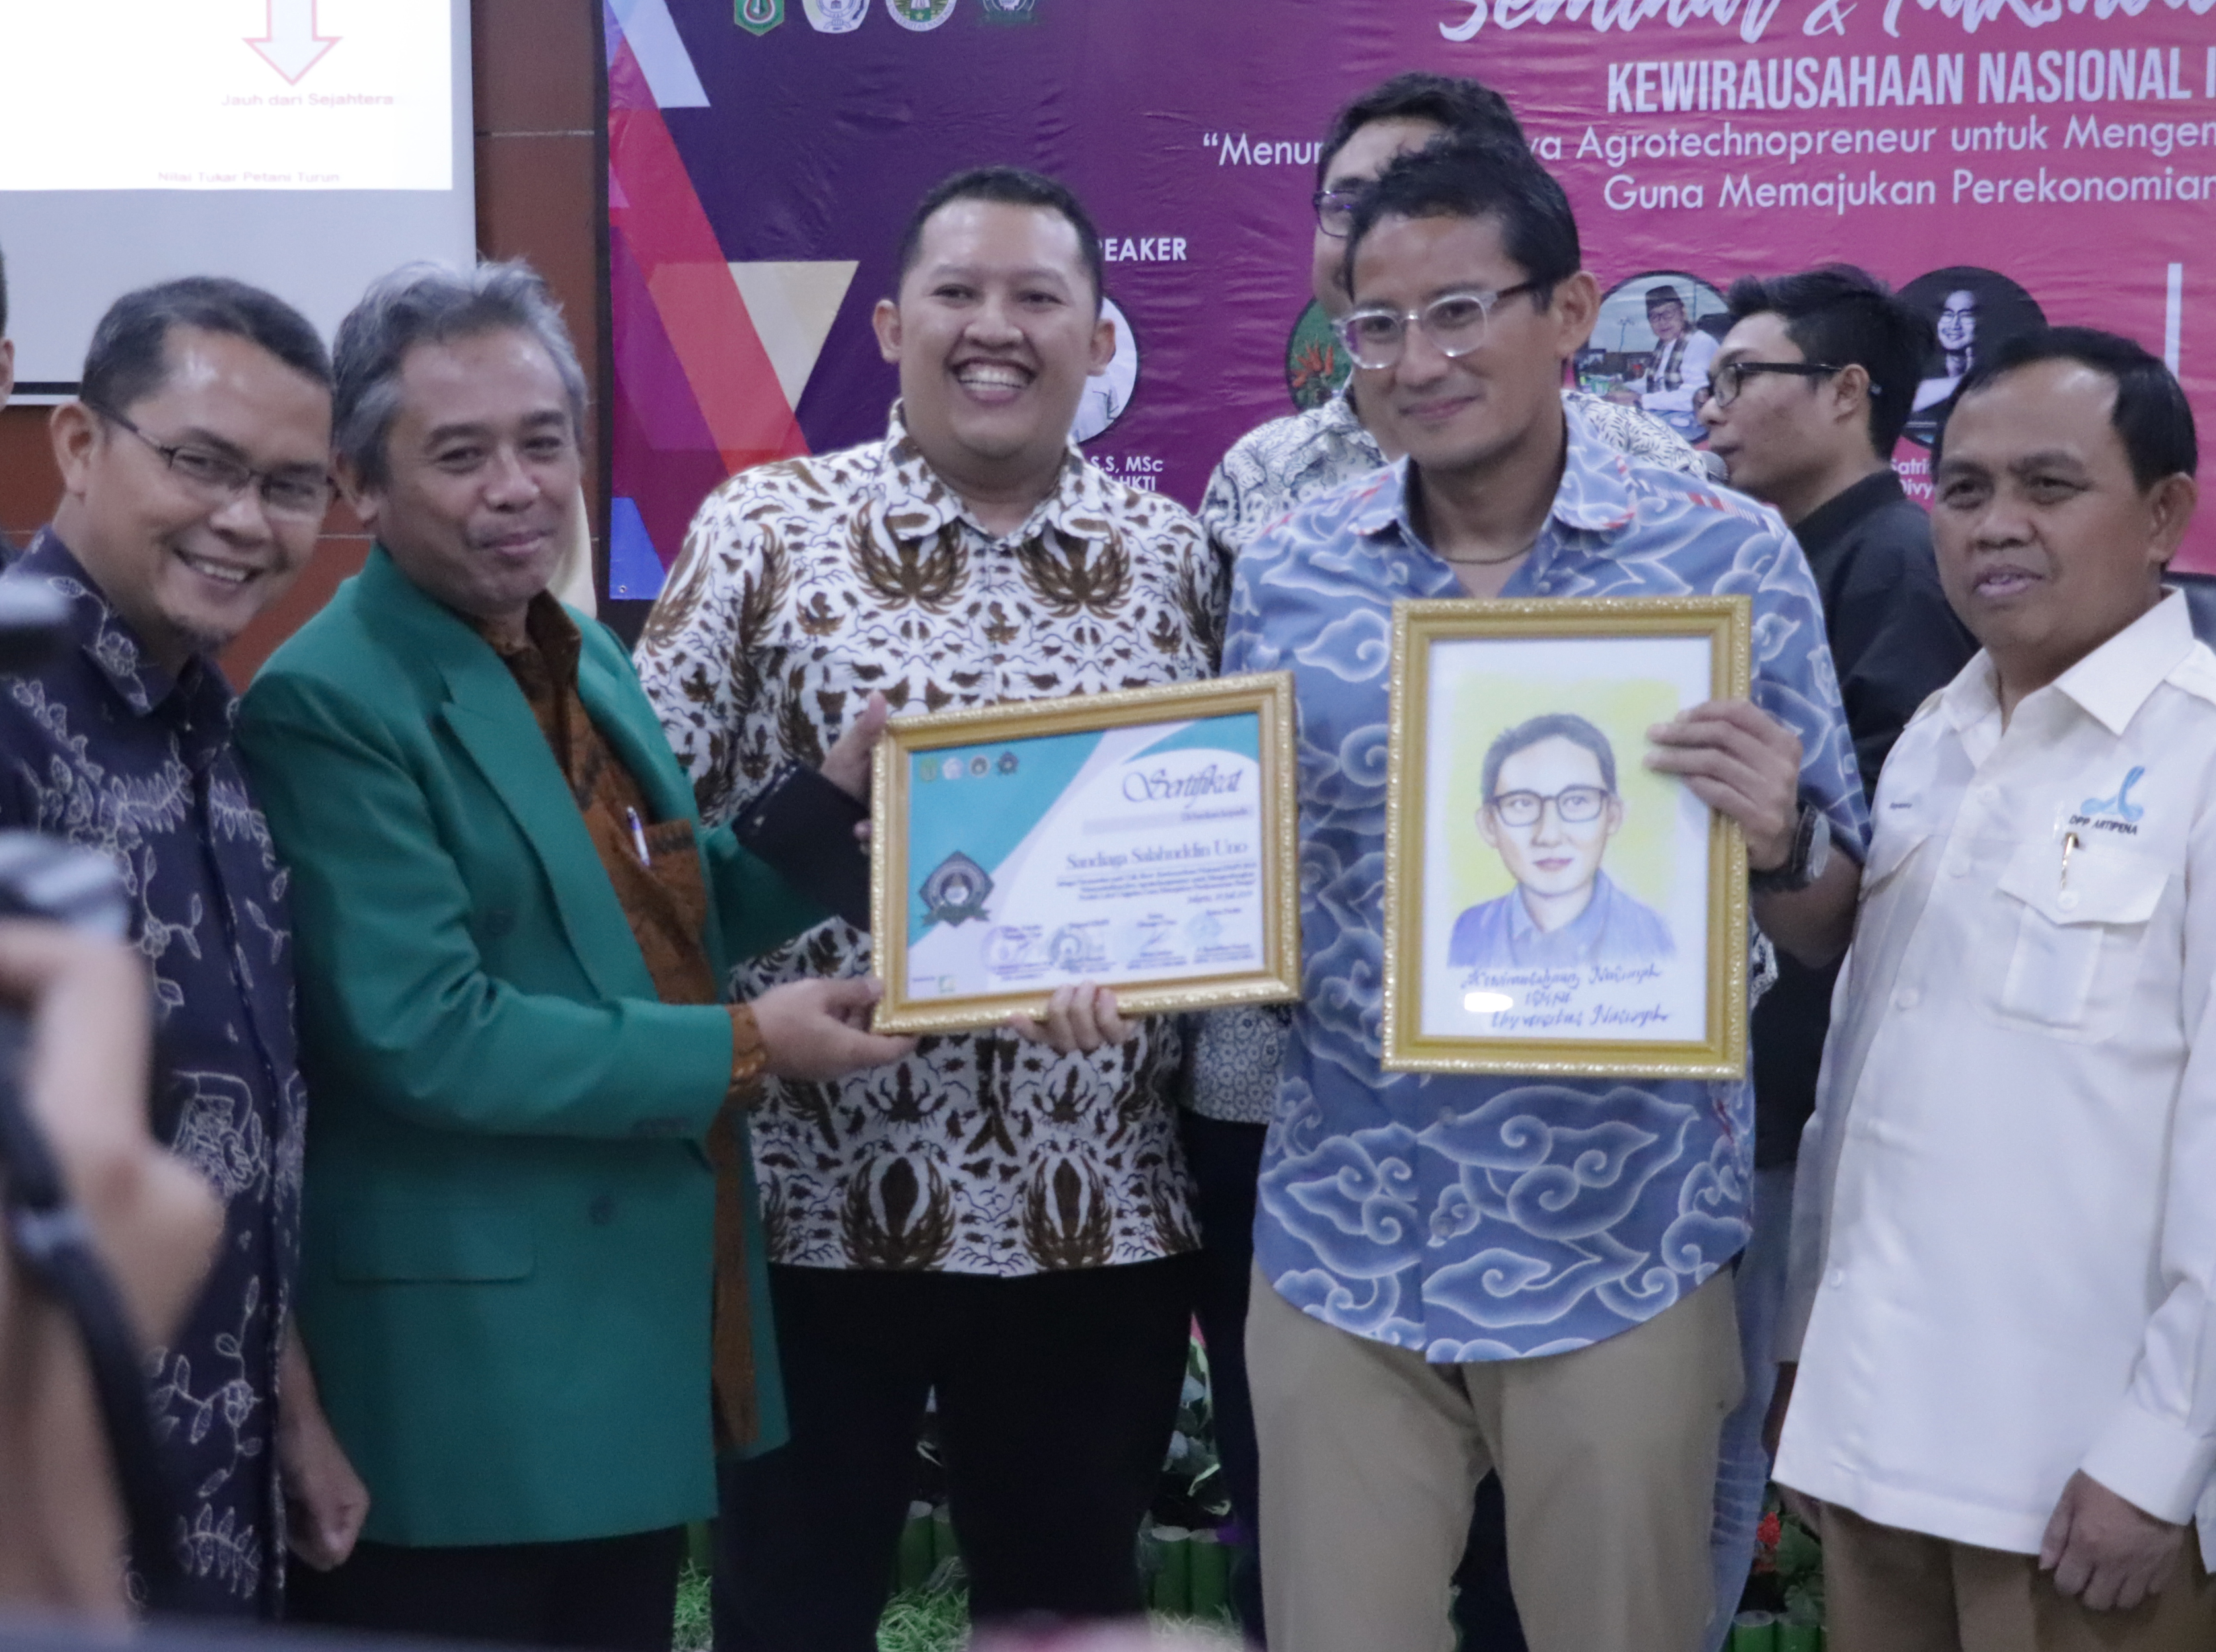 Sandiaga Uno menerima sertitikat dan karikartur dari Dekan Fakultas Pertanian Universitas Nasional Ir. Inkorena G.S. Sukartono, M.Agr setelah memnjadi pembicara diacara Kewirausahaan Nasional ISMPI di Kampus Unas Pasar Minggu Jakarta Selatan (10/7).